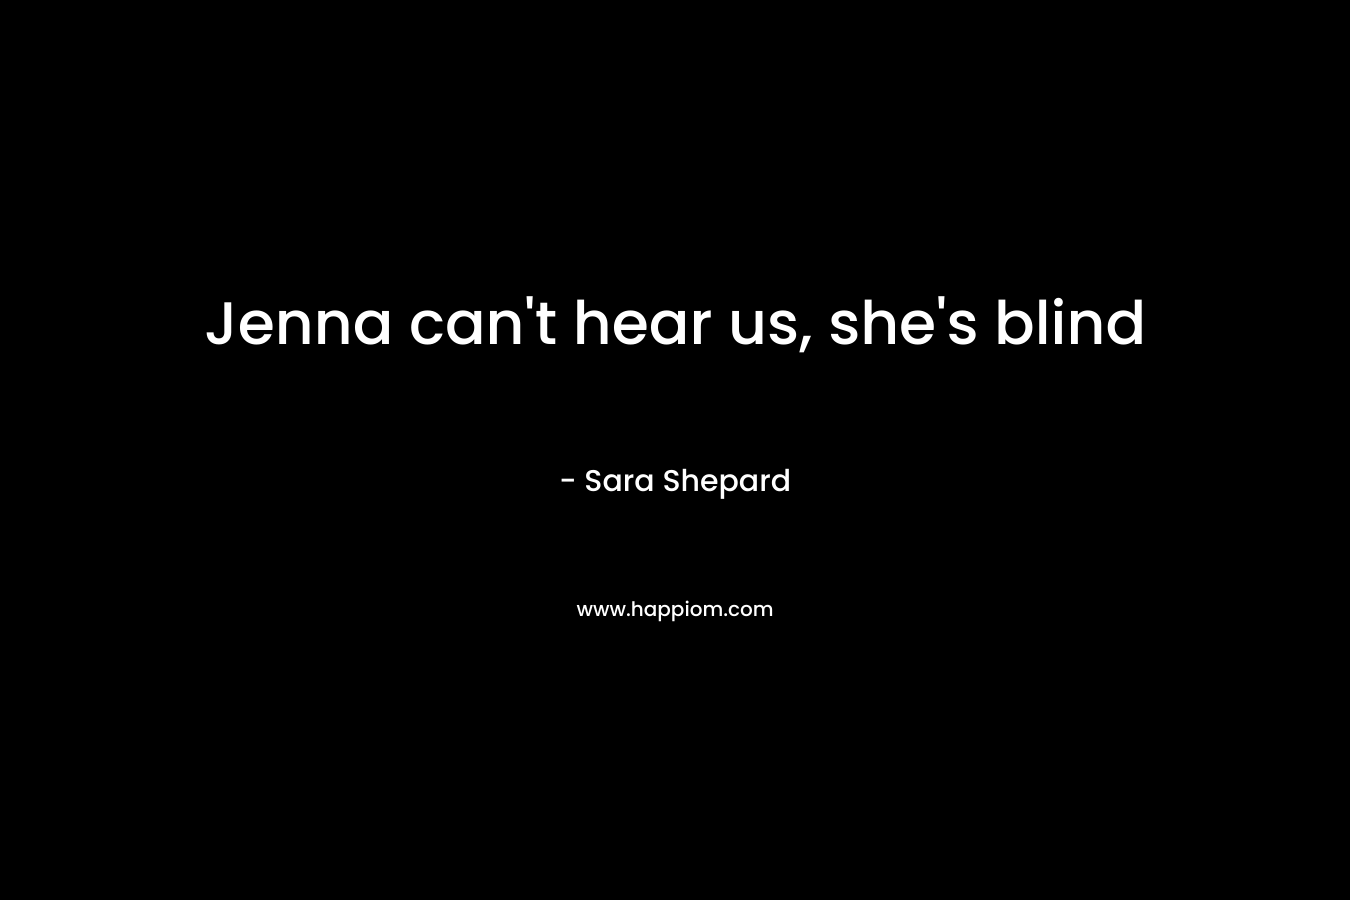 Jenna can't hear us, she's blind